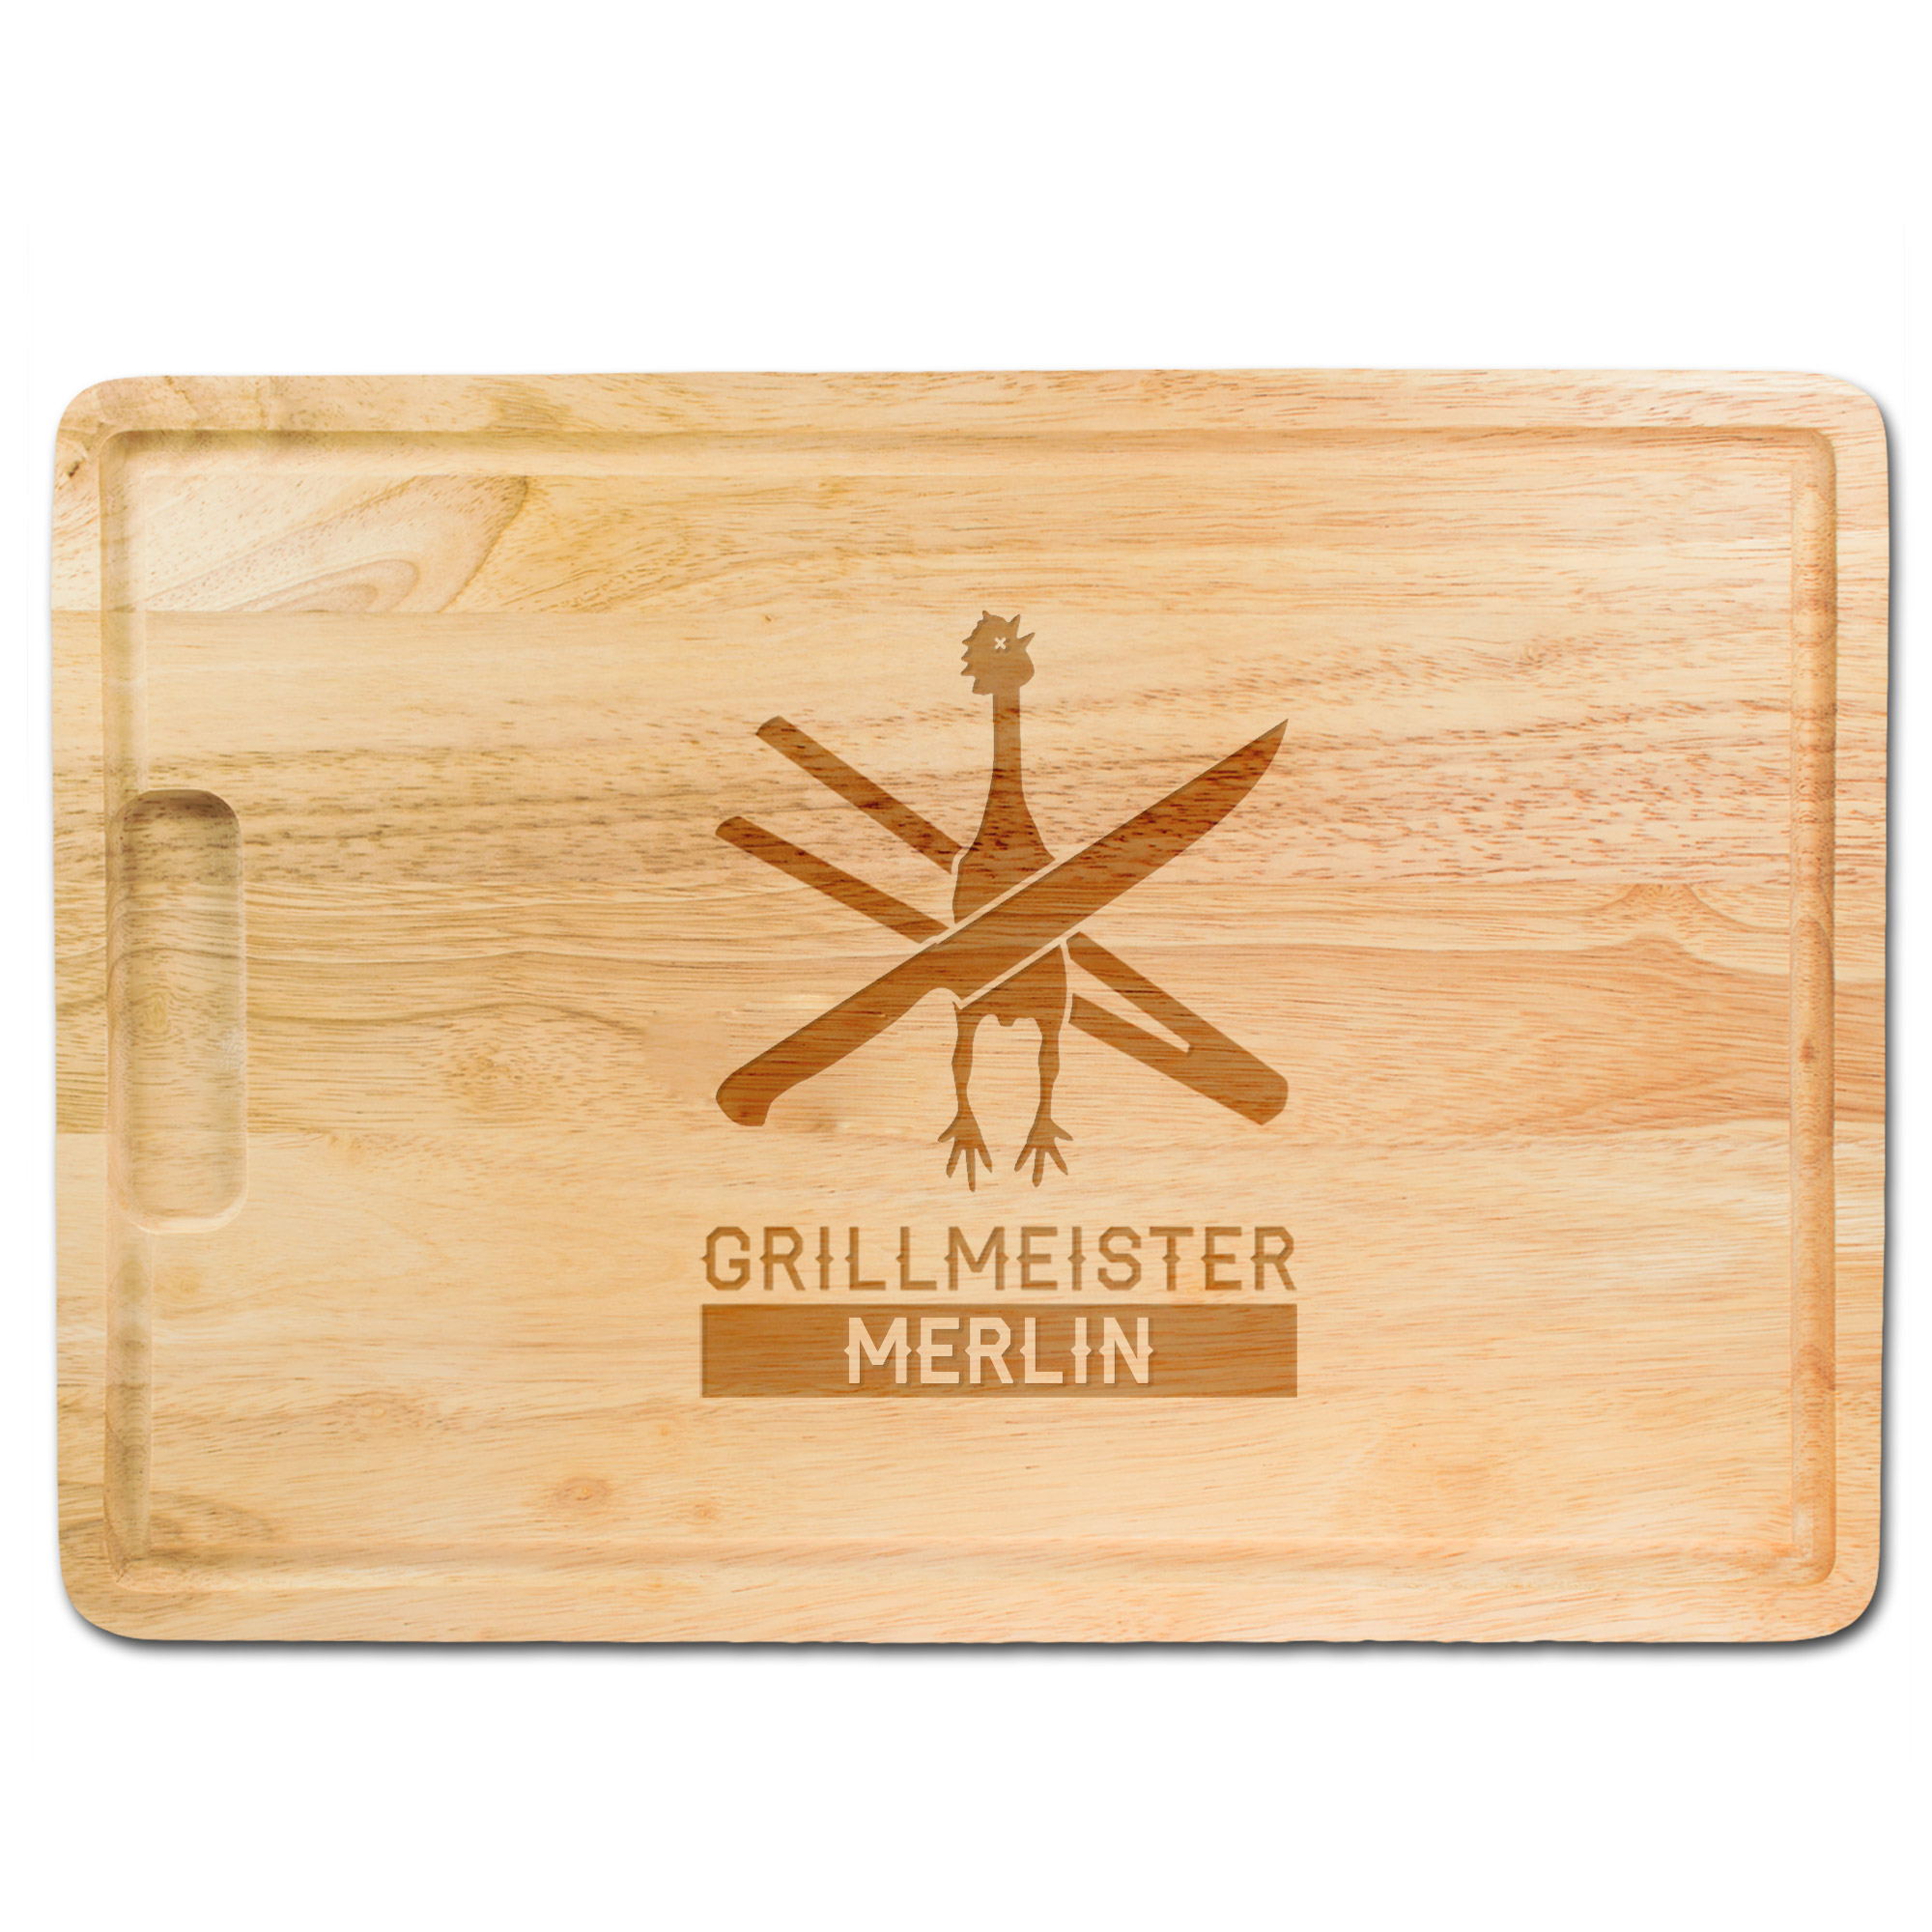 Burgerpresse mit Schneidebrett Grillset - Grillmeister 3563 - 8